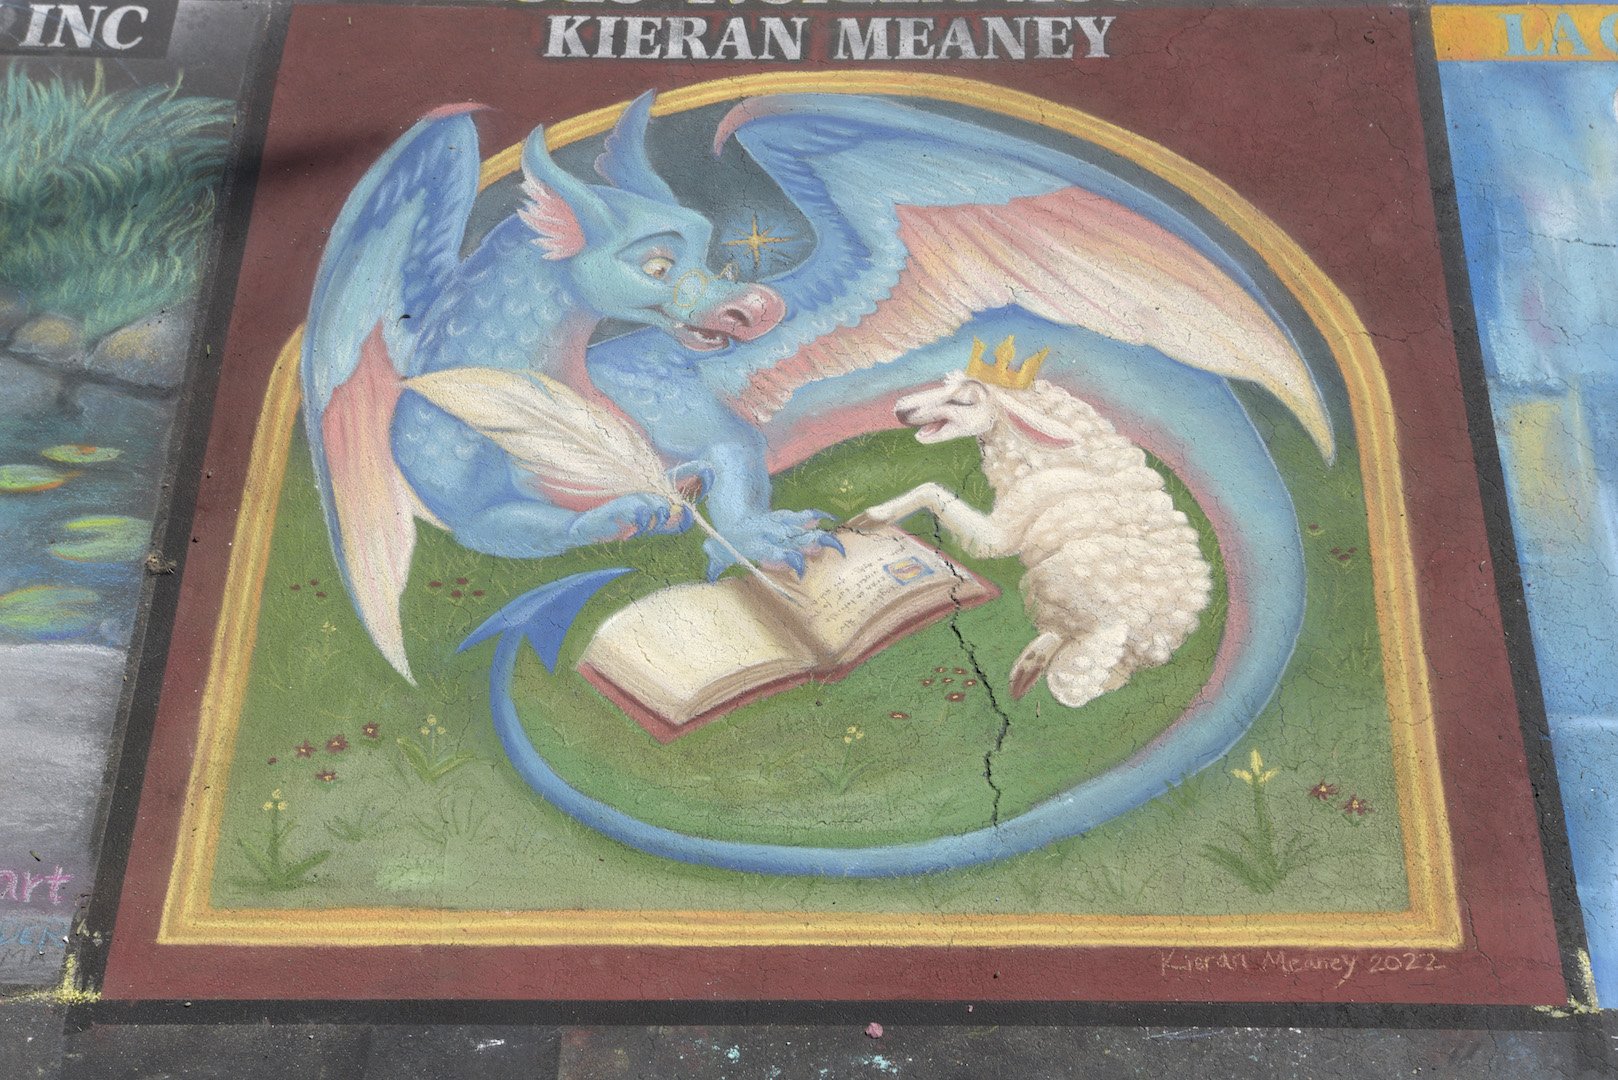  Kieran Meaney  Artist:  Kieran Meaney 